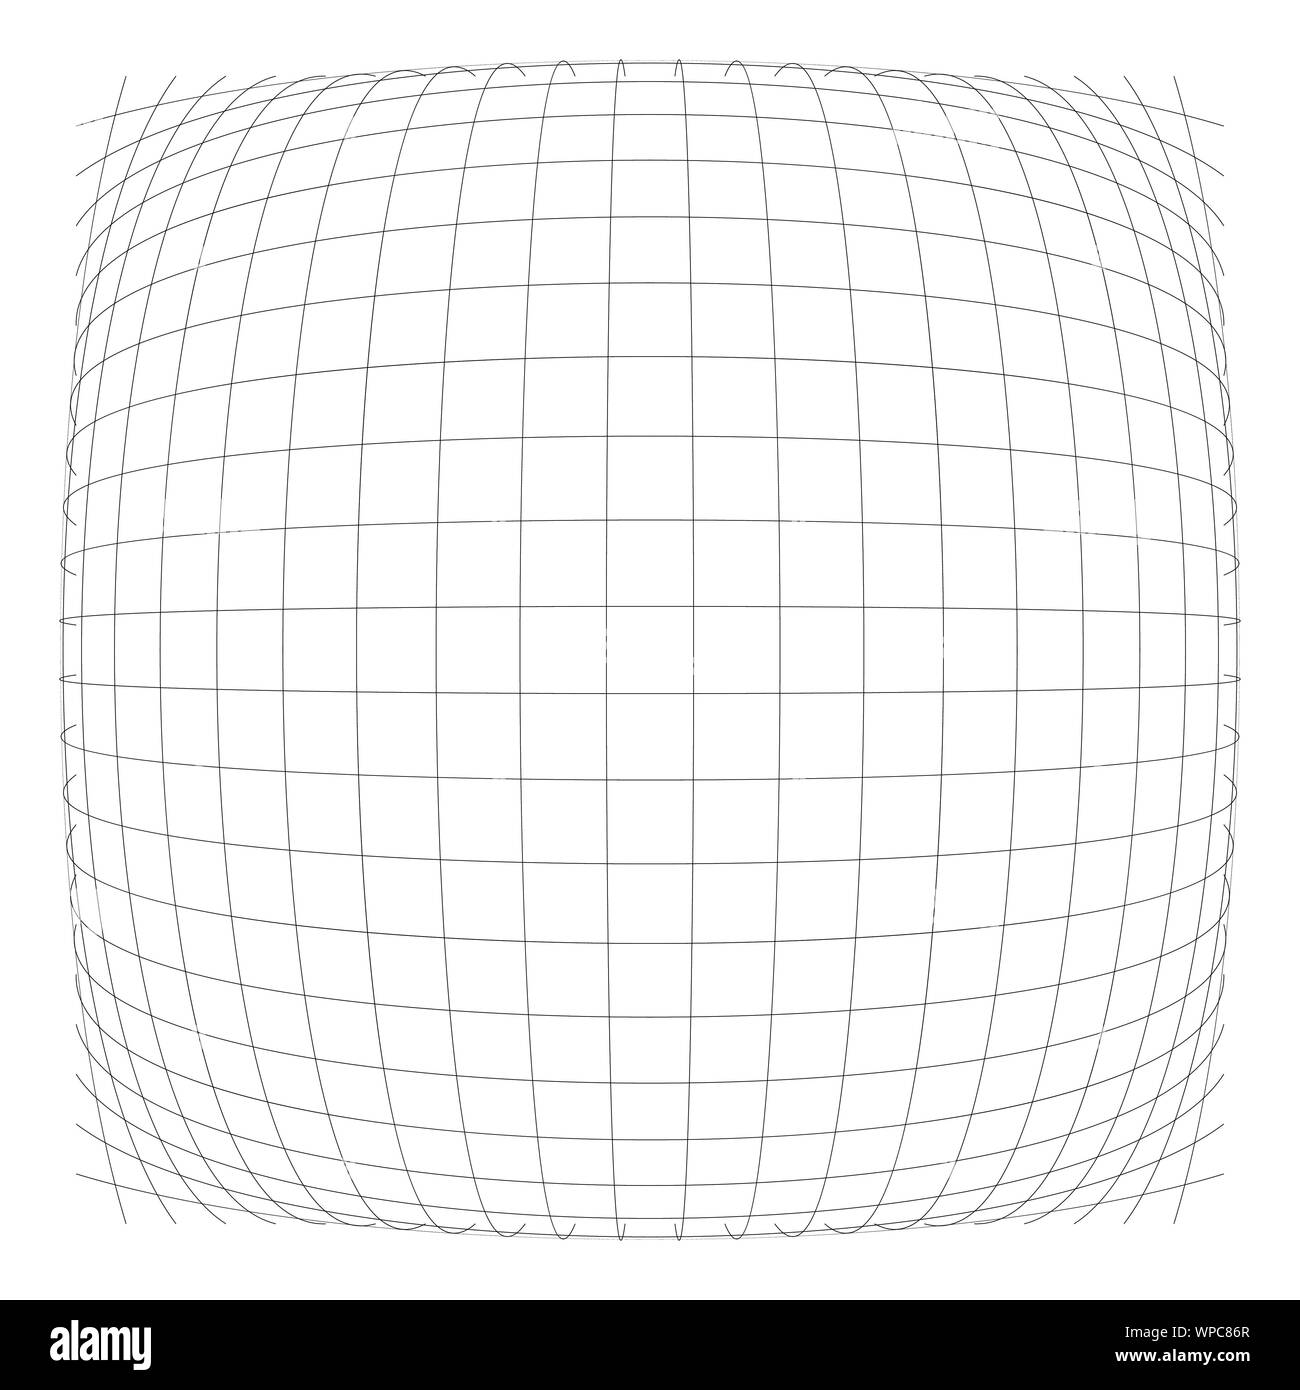 3D sferica convessa, Globe, orb sporgono distorsione e deformazione su linee griglia, mesh. Il rigonfiamento, rigonfiamento, gonfiare sfera. Lampadina, urtare o un rigonfiamento del filo di effetto-fr Illustrazione Vettoriale